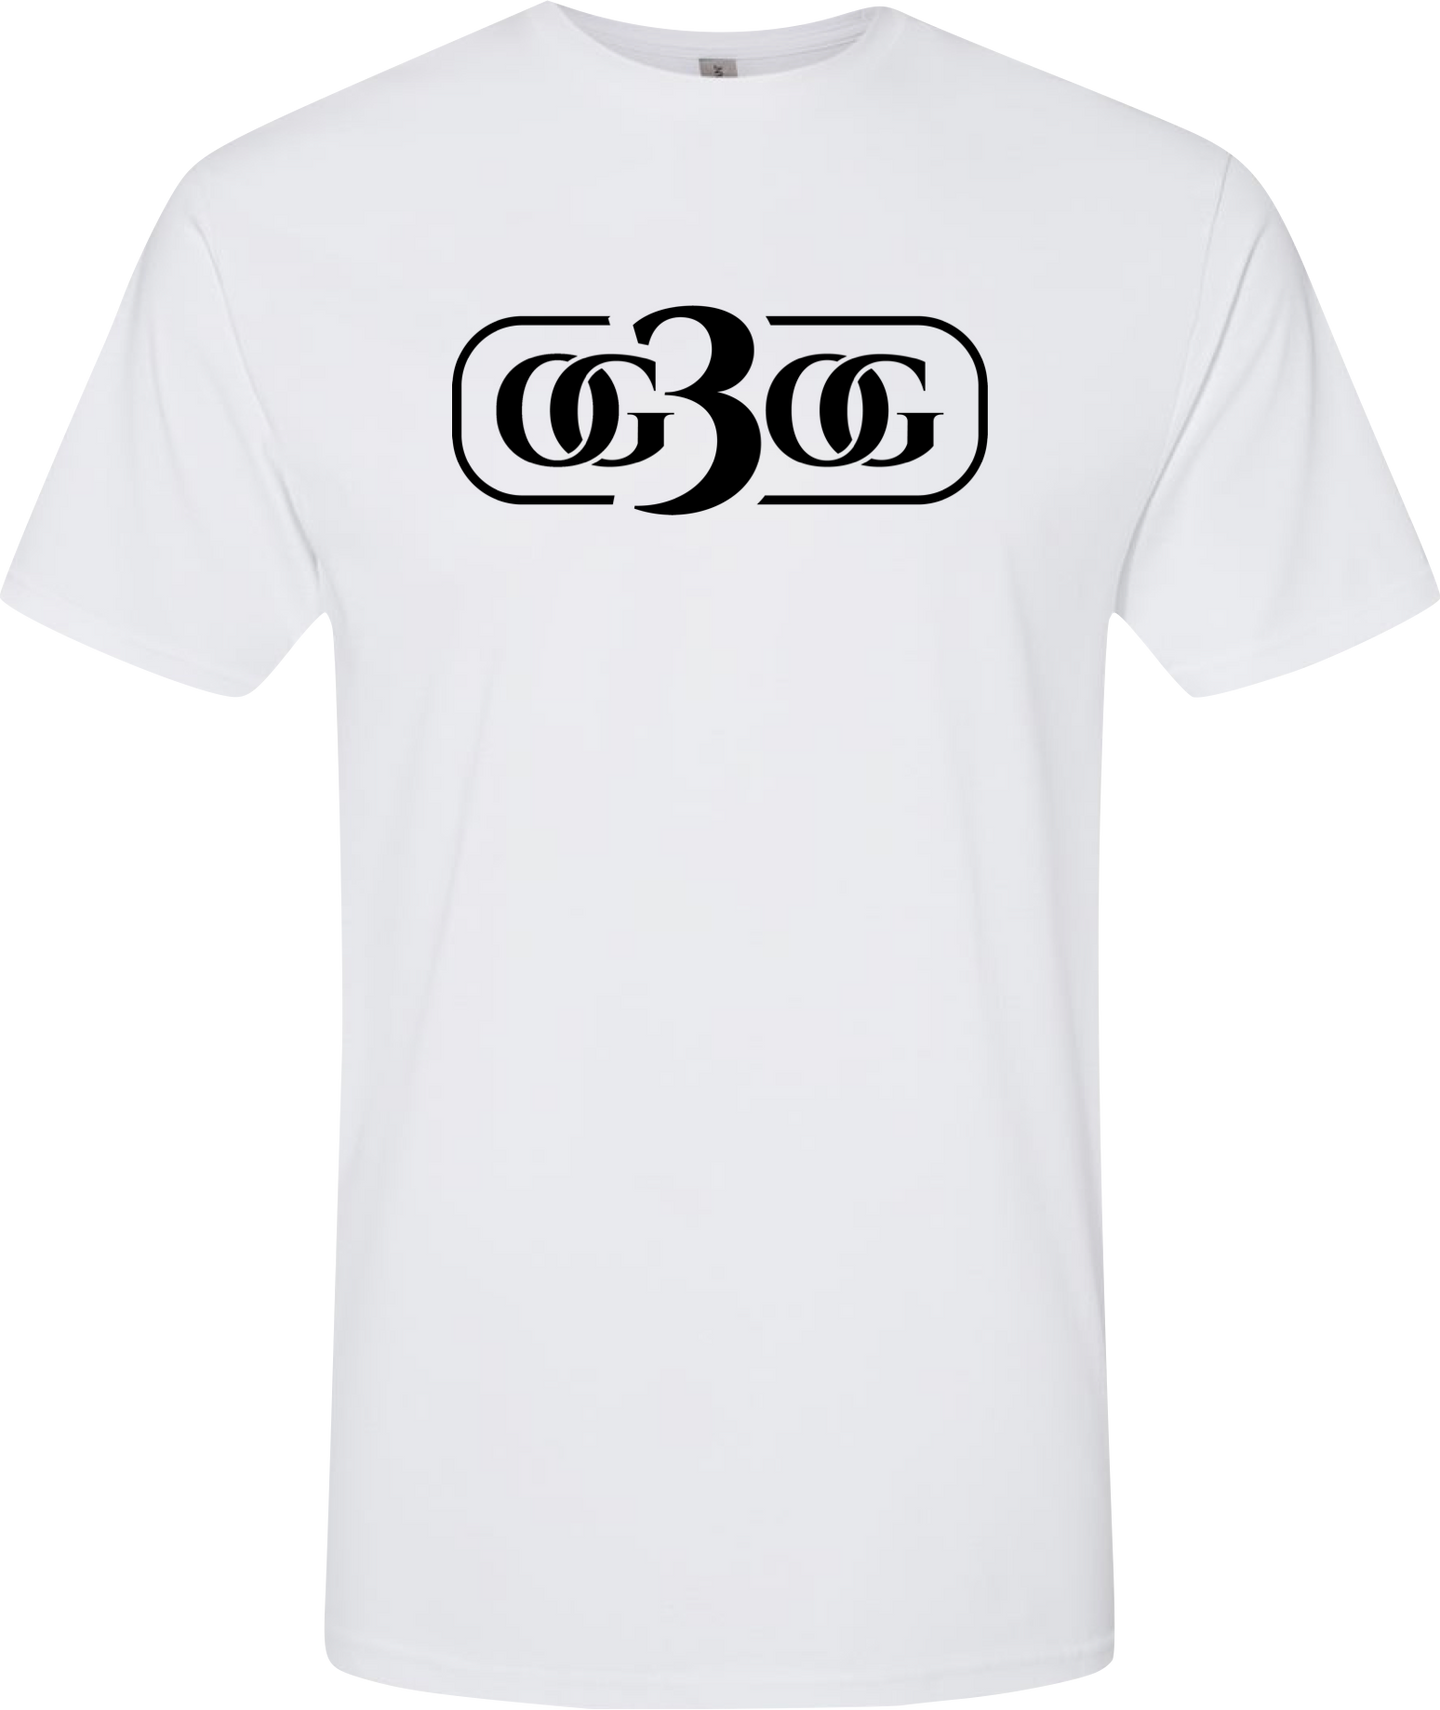 OG3OG White and Black T-Shirt